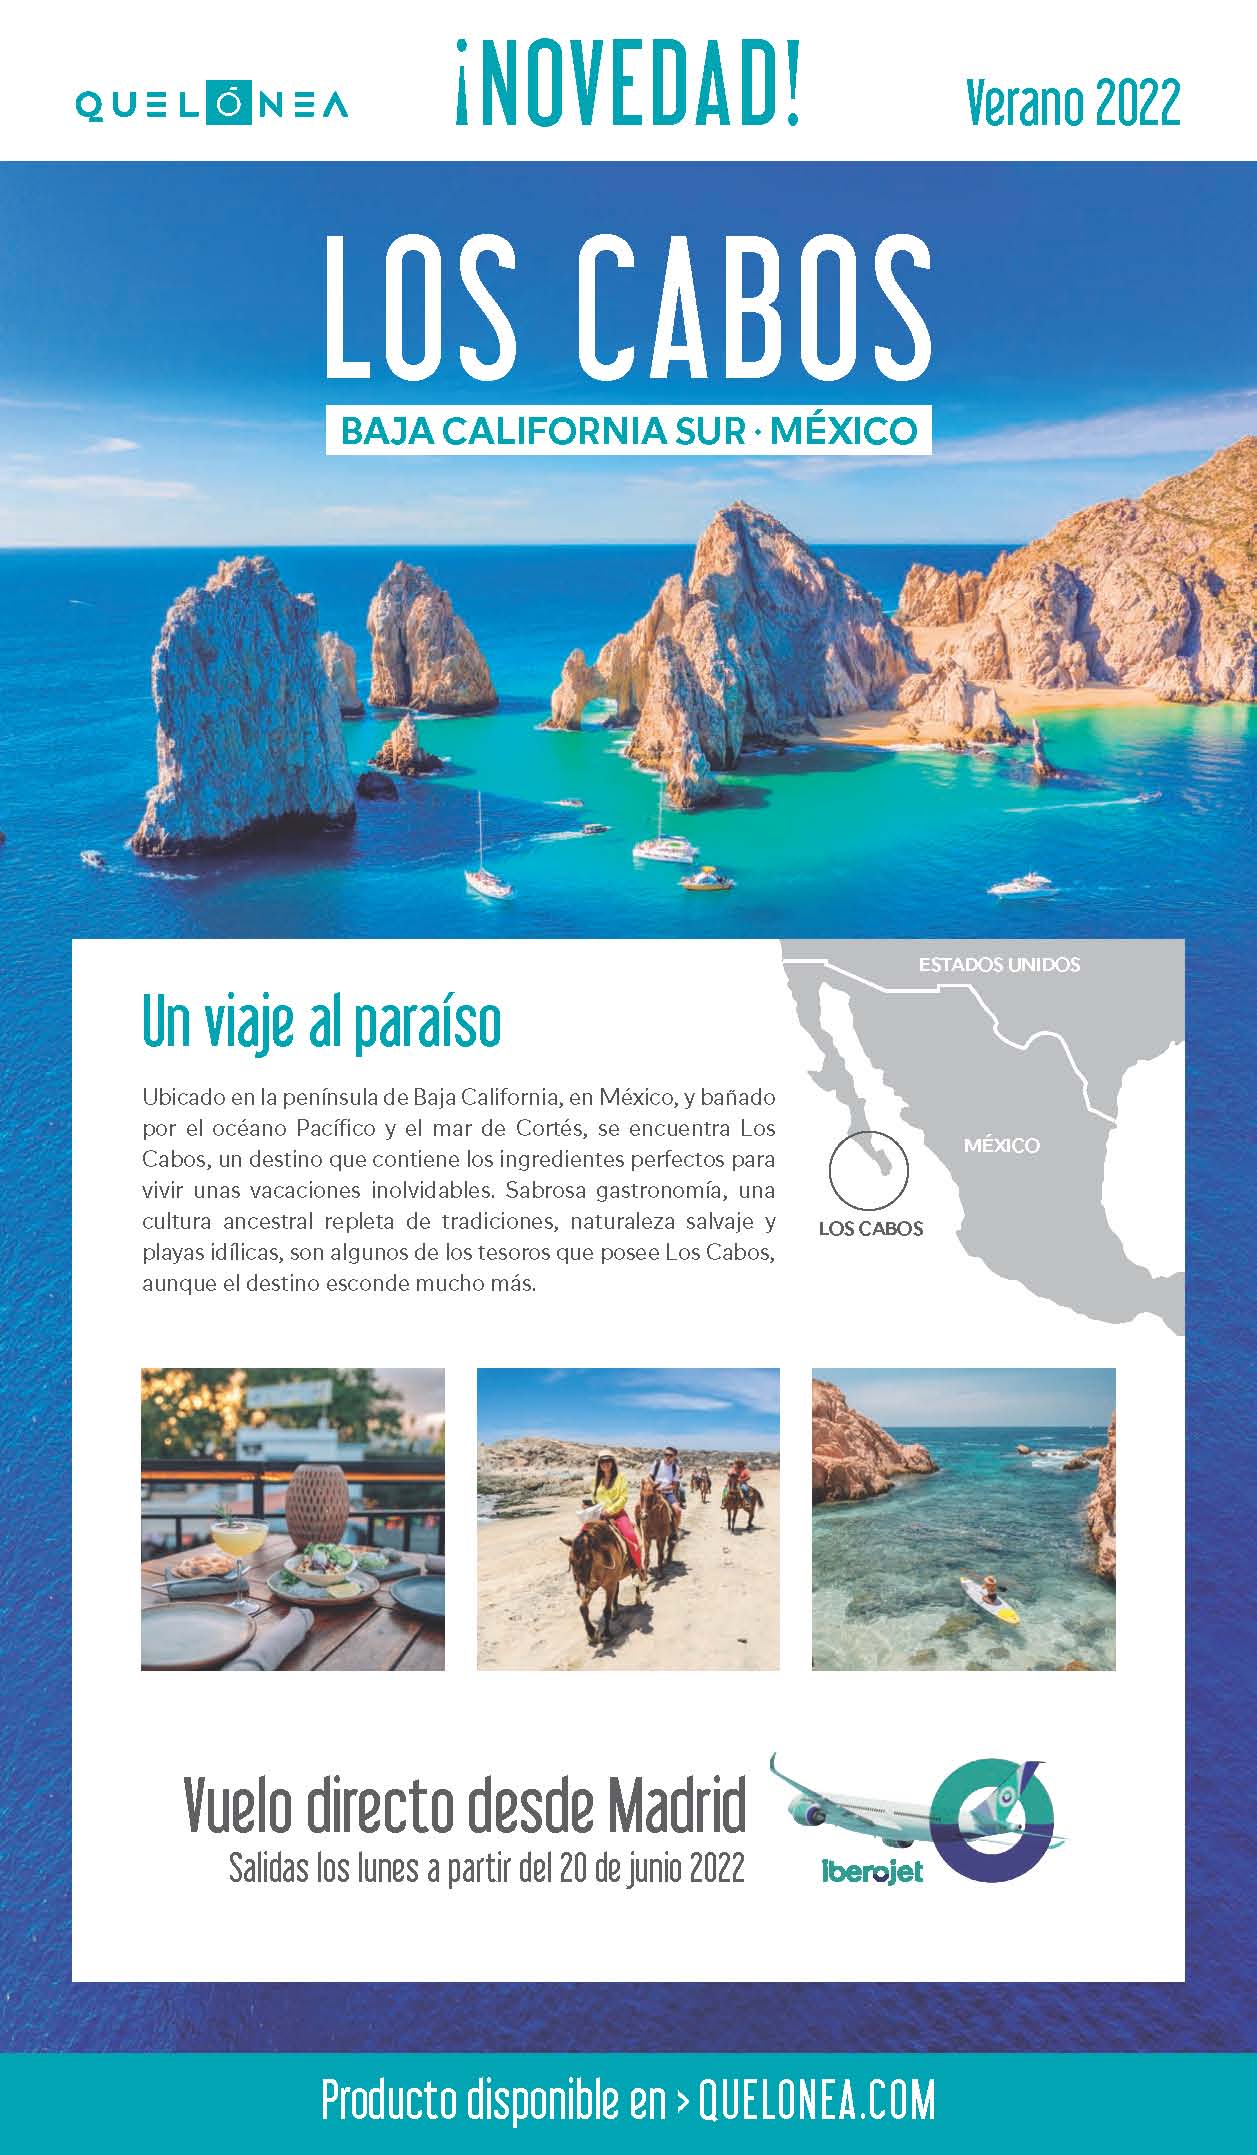 Oferta Quelonea Los Cabos Mexico 2022 vuelo directo desde Madrid